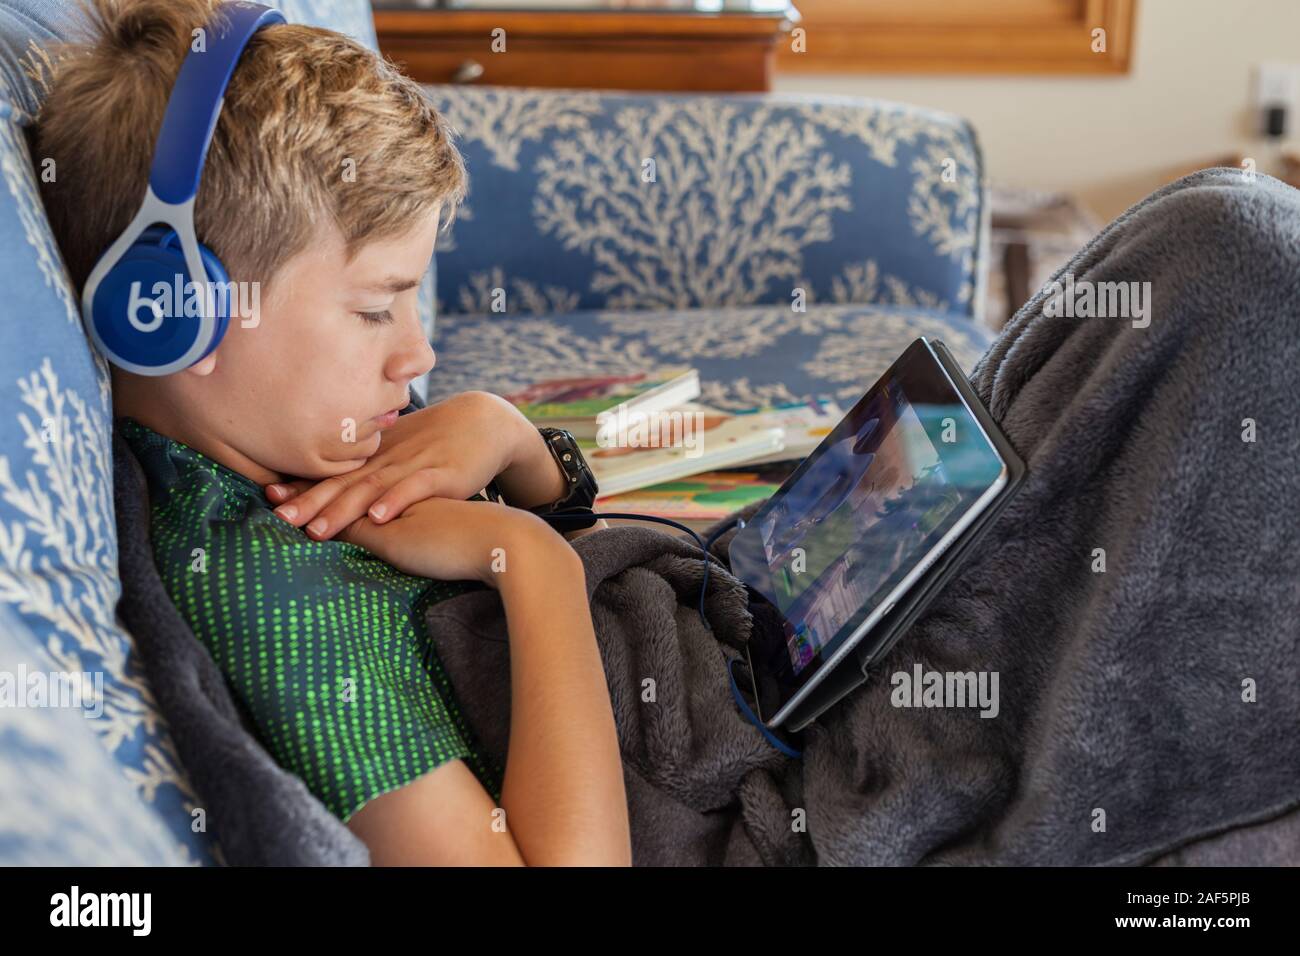 11-année-vieux garçon et son iPad. Avon, Outer Banks, Caroline du Nord. (Modèle 1992) Banque D'Images